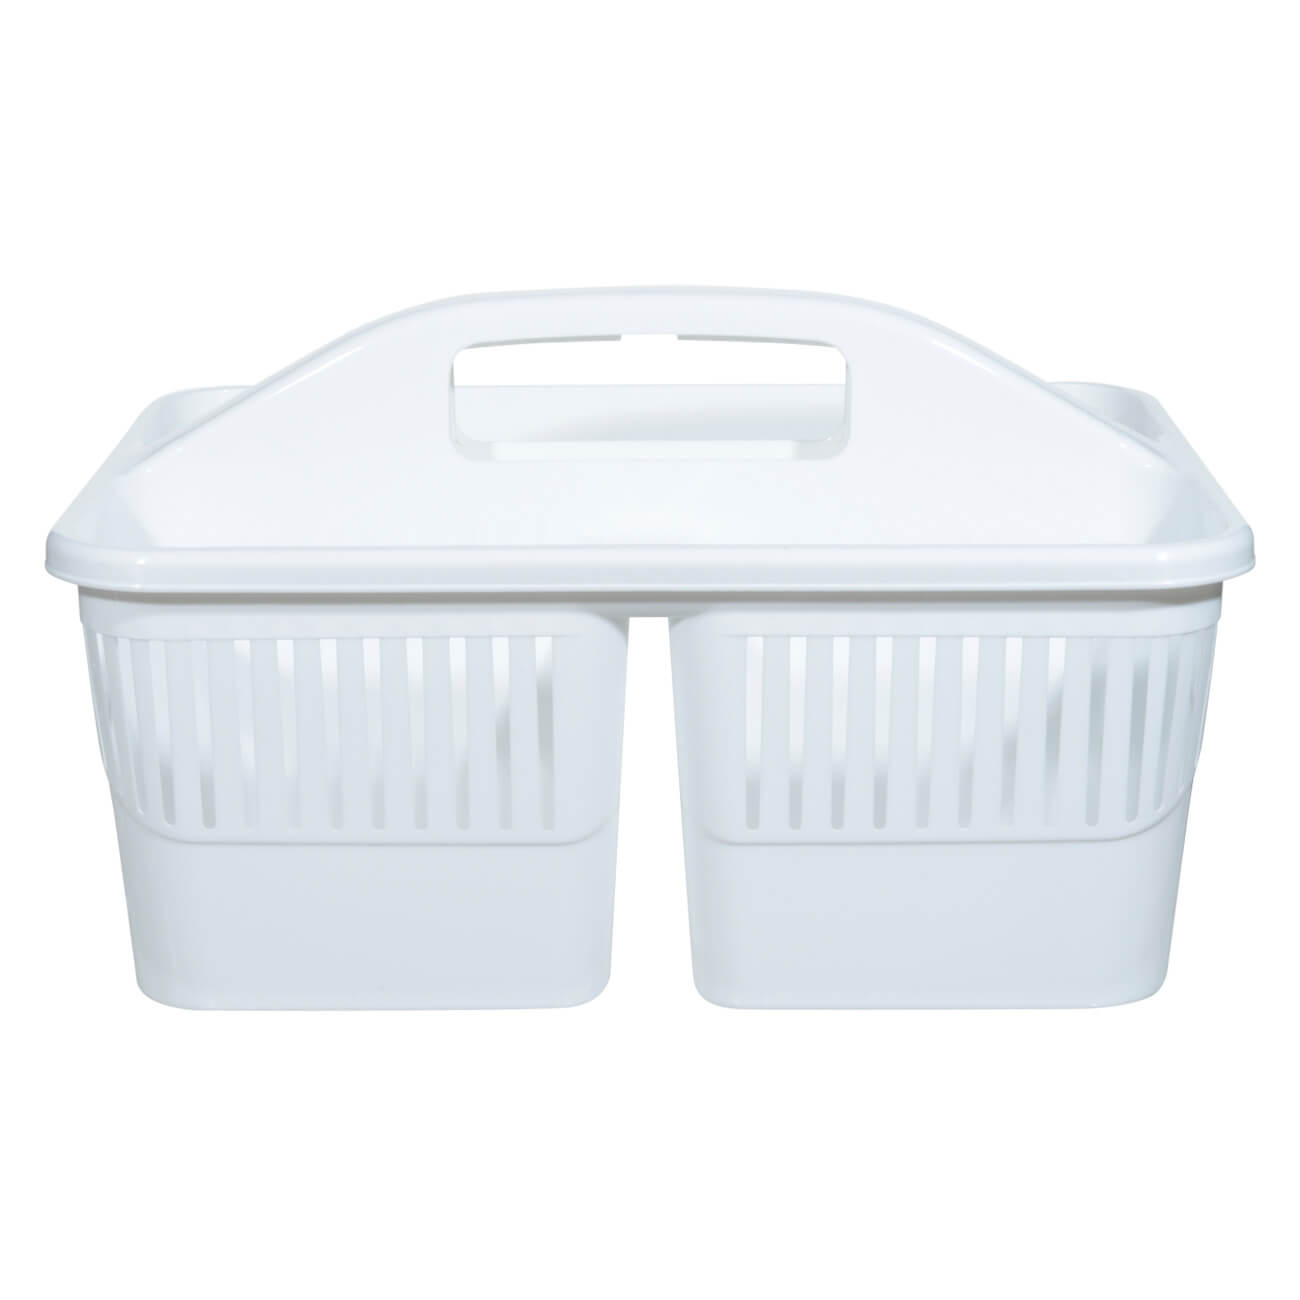 Органайзер для моющих средств, 23х30 см, переносной, пластик, белый, Compact органайзер для хранения бытпласт volf 16 390x295x60 мм пластик